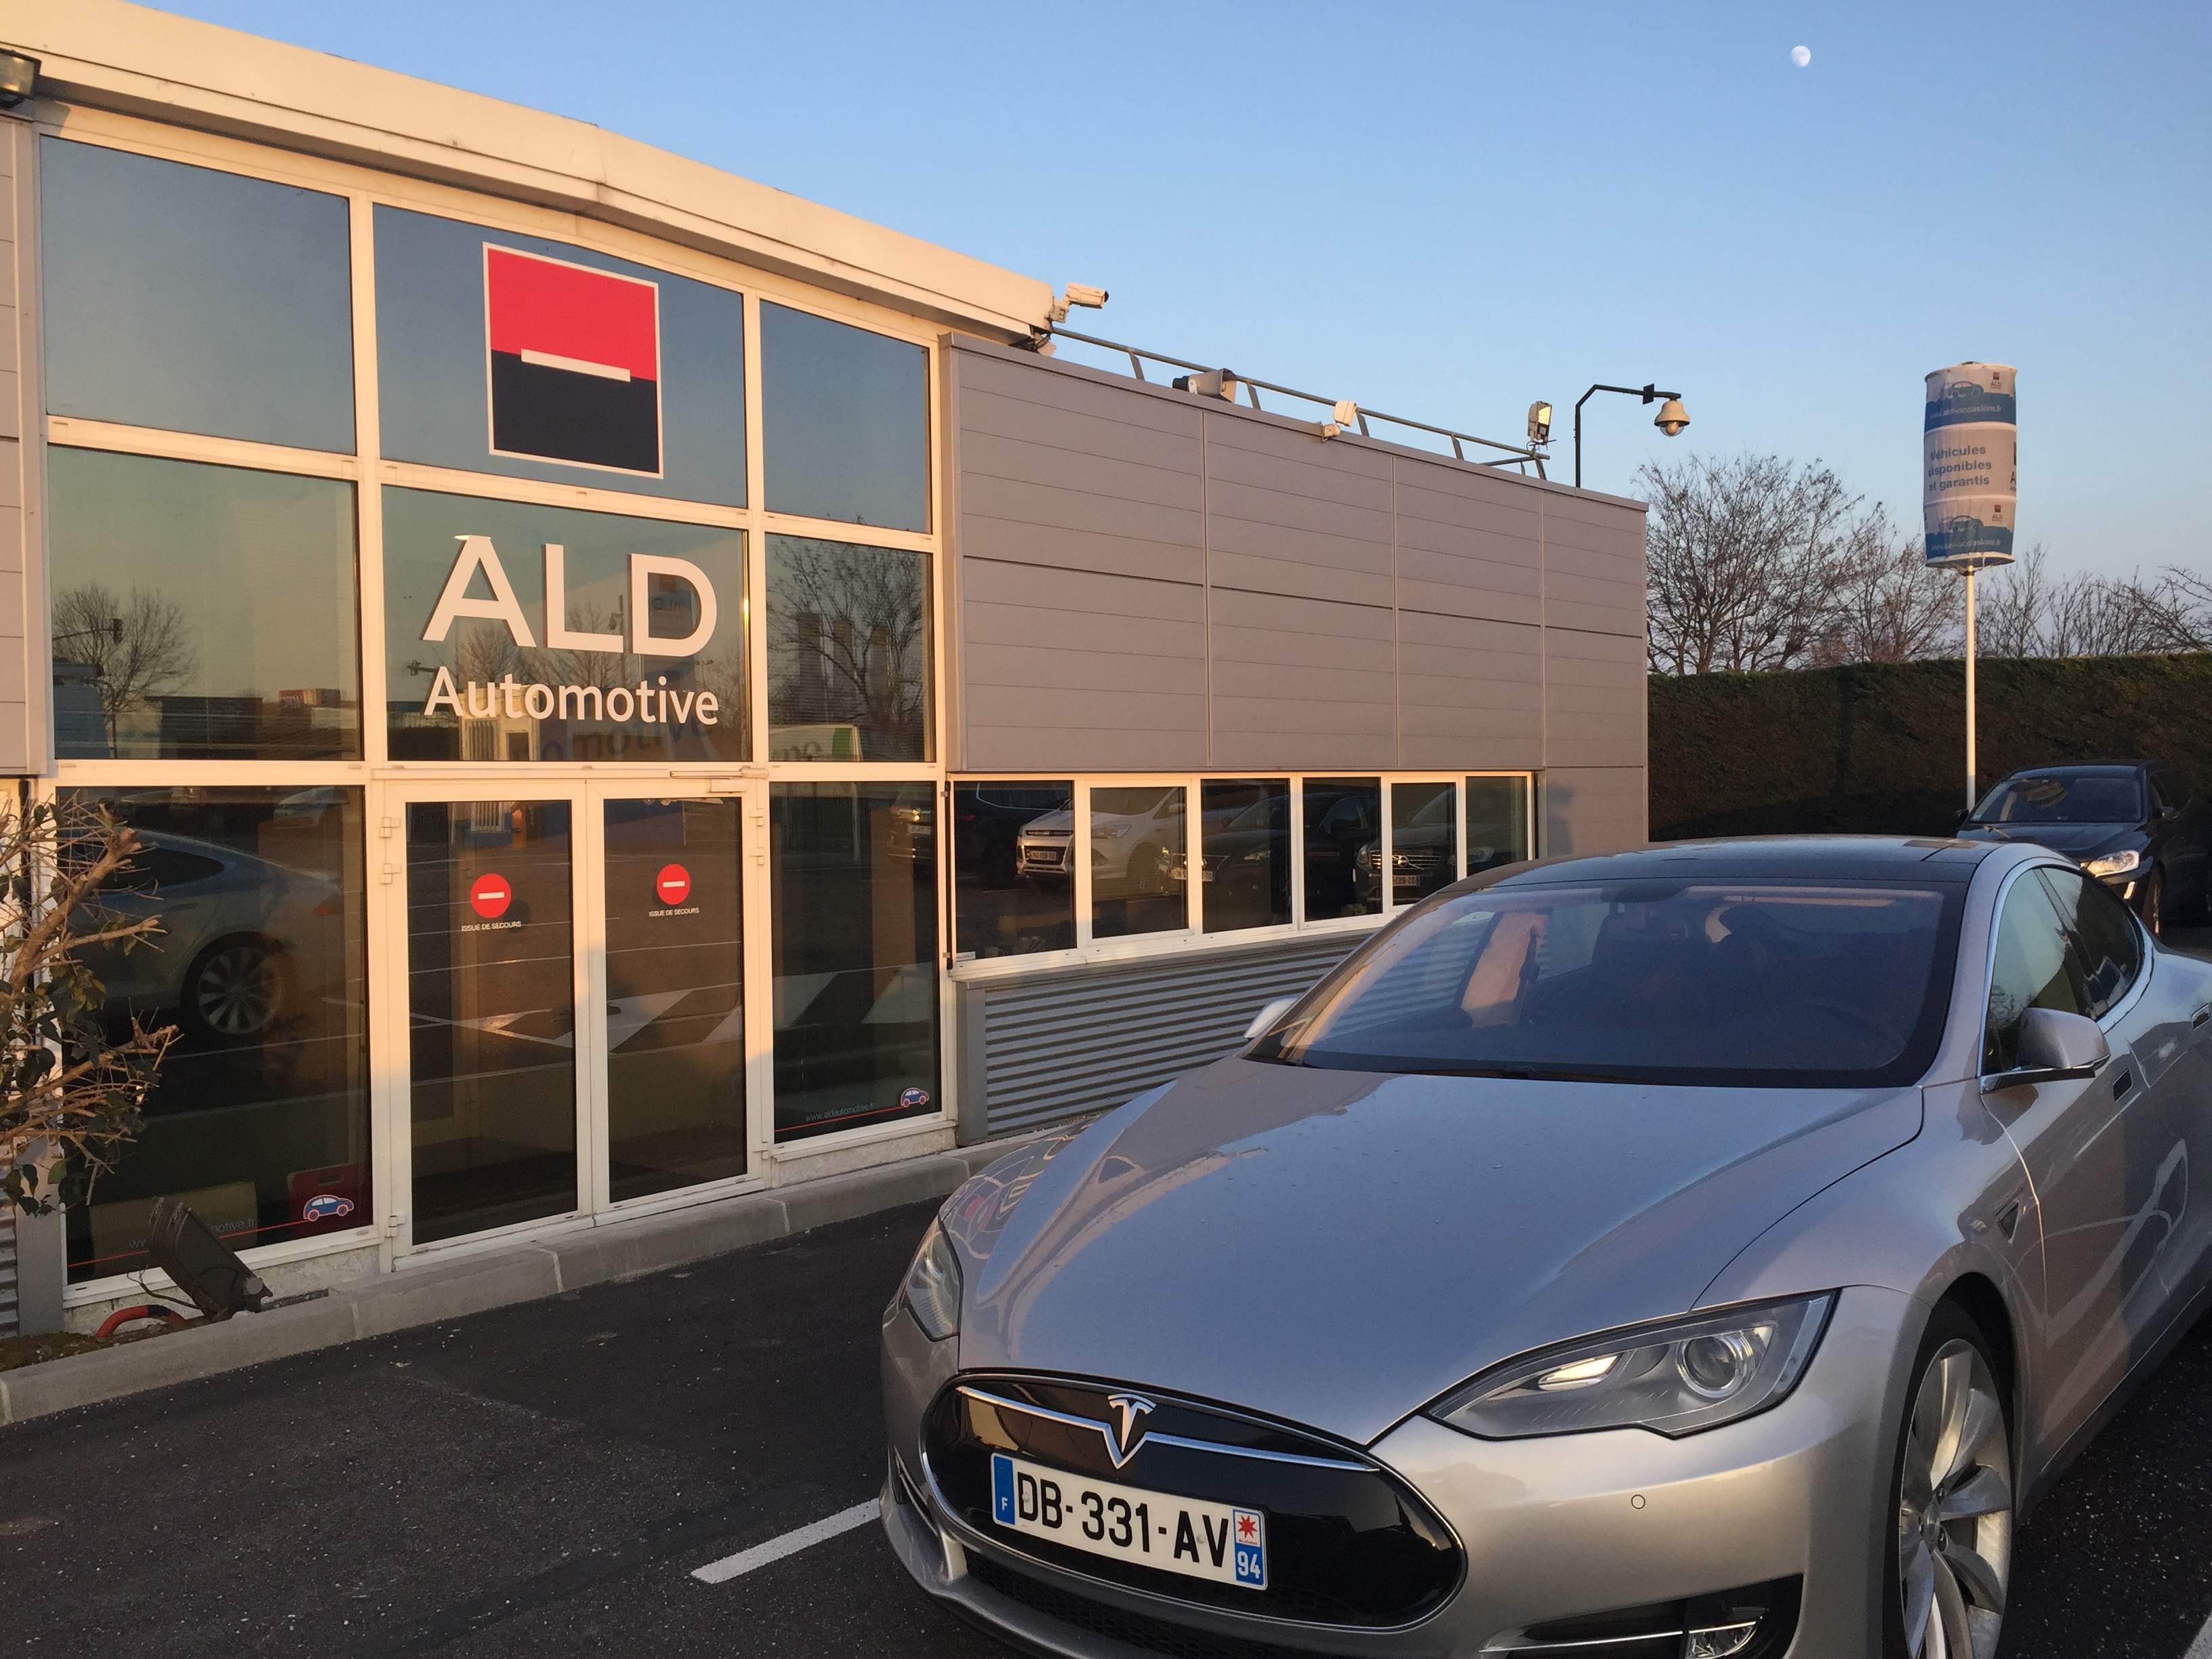 ALD Automotive launches digital remarketing platform